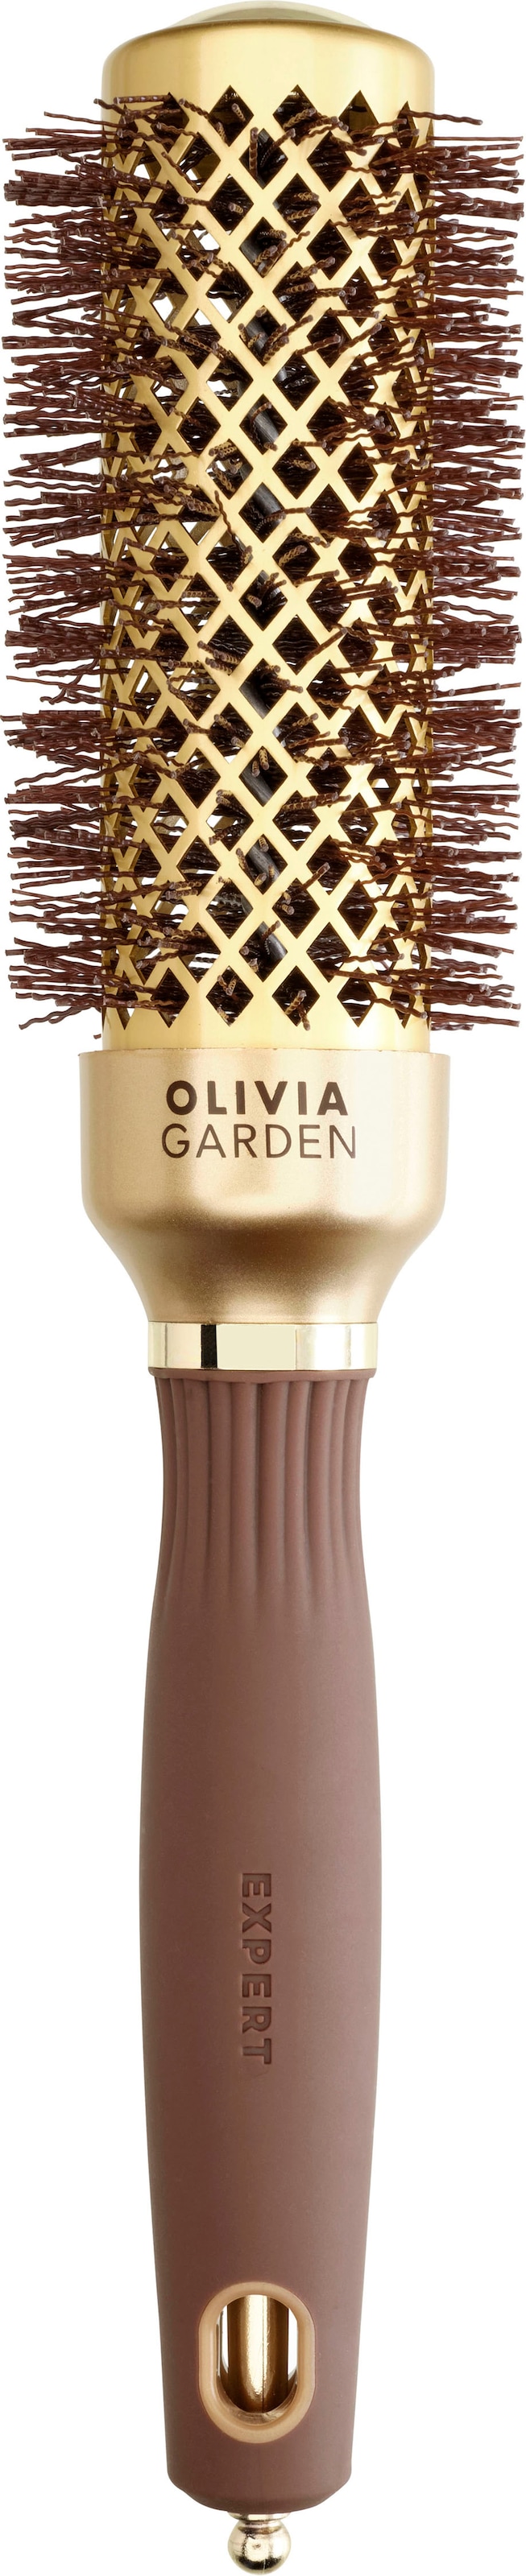 Rundbürste BLOWOUT GARDEN Gold&Brown« Wavy OLIVIA »EXPERT BAUR SHINE Bristles |